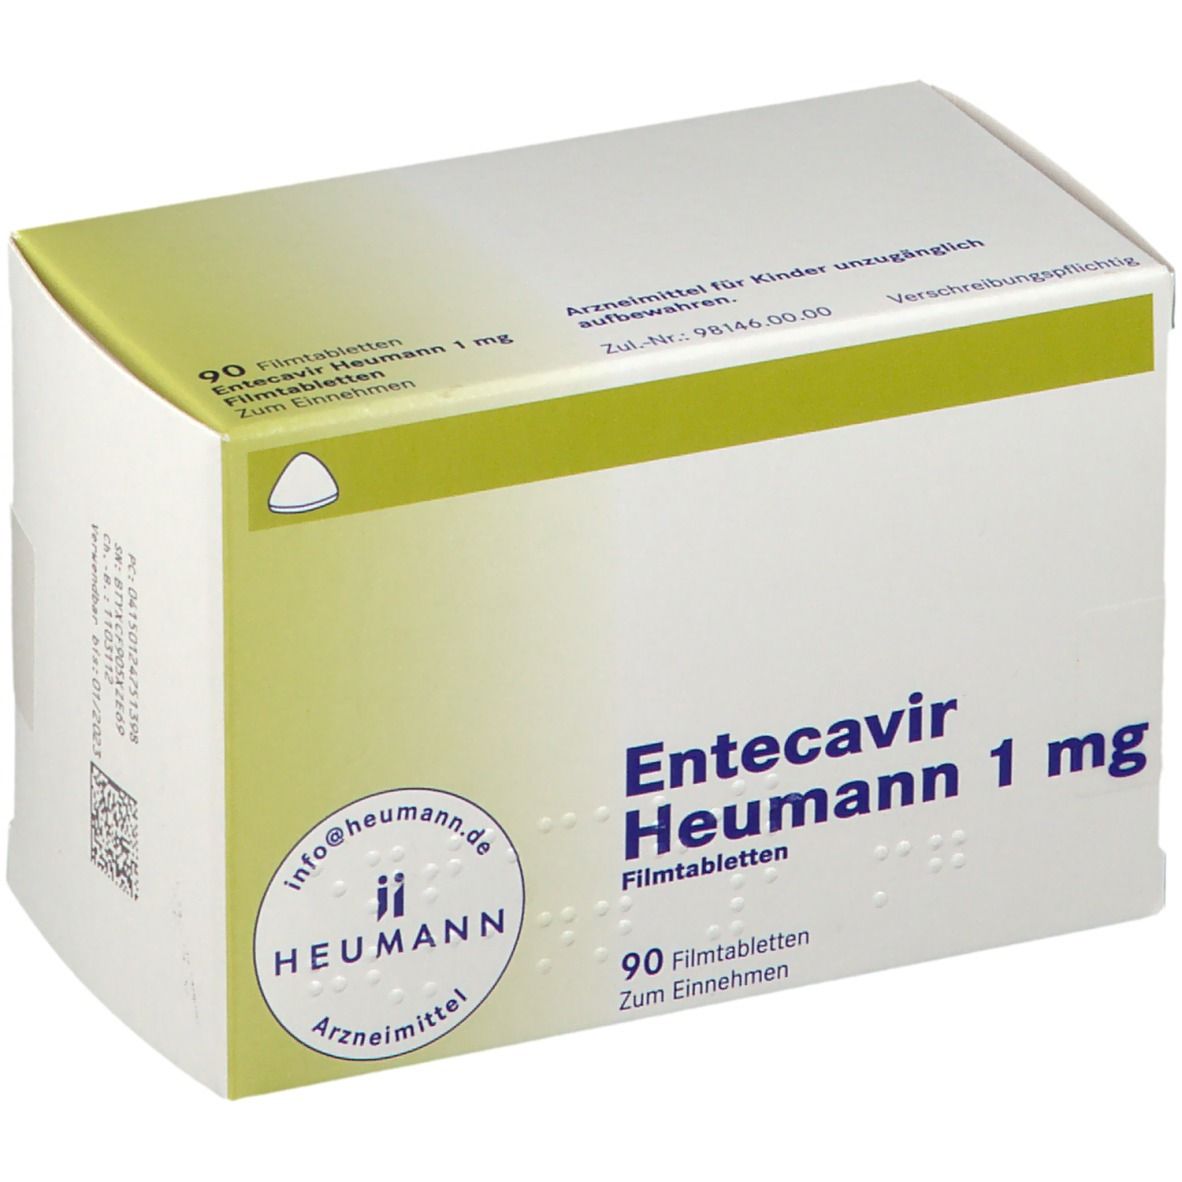 Entecavcir Heumann 1 mg